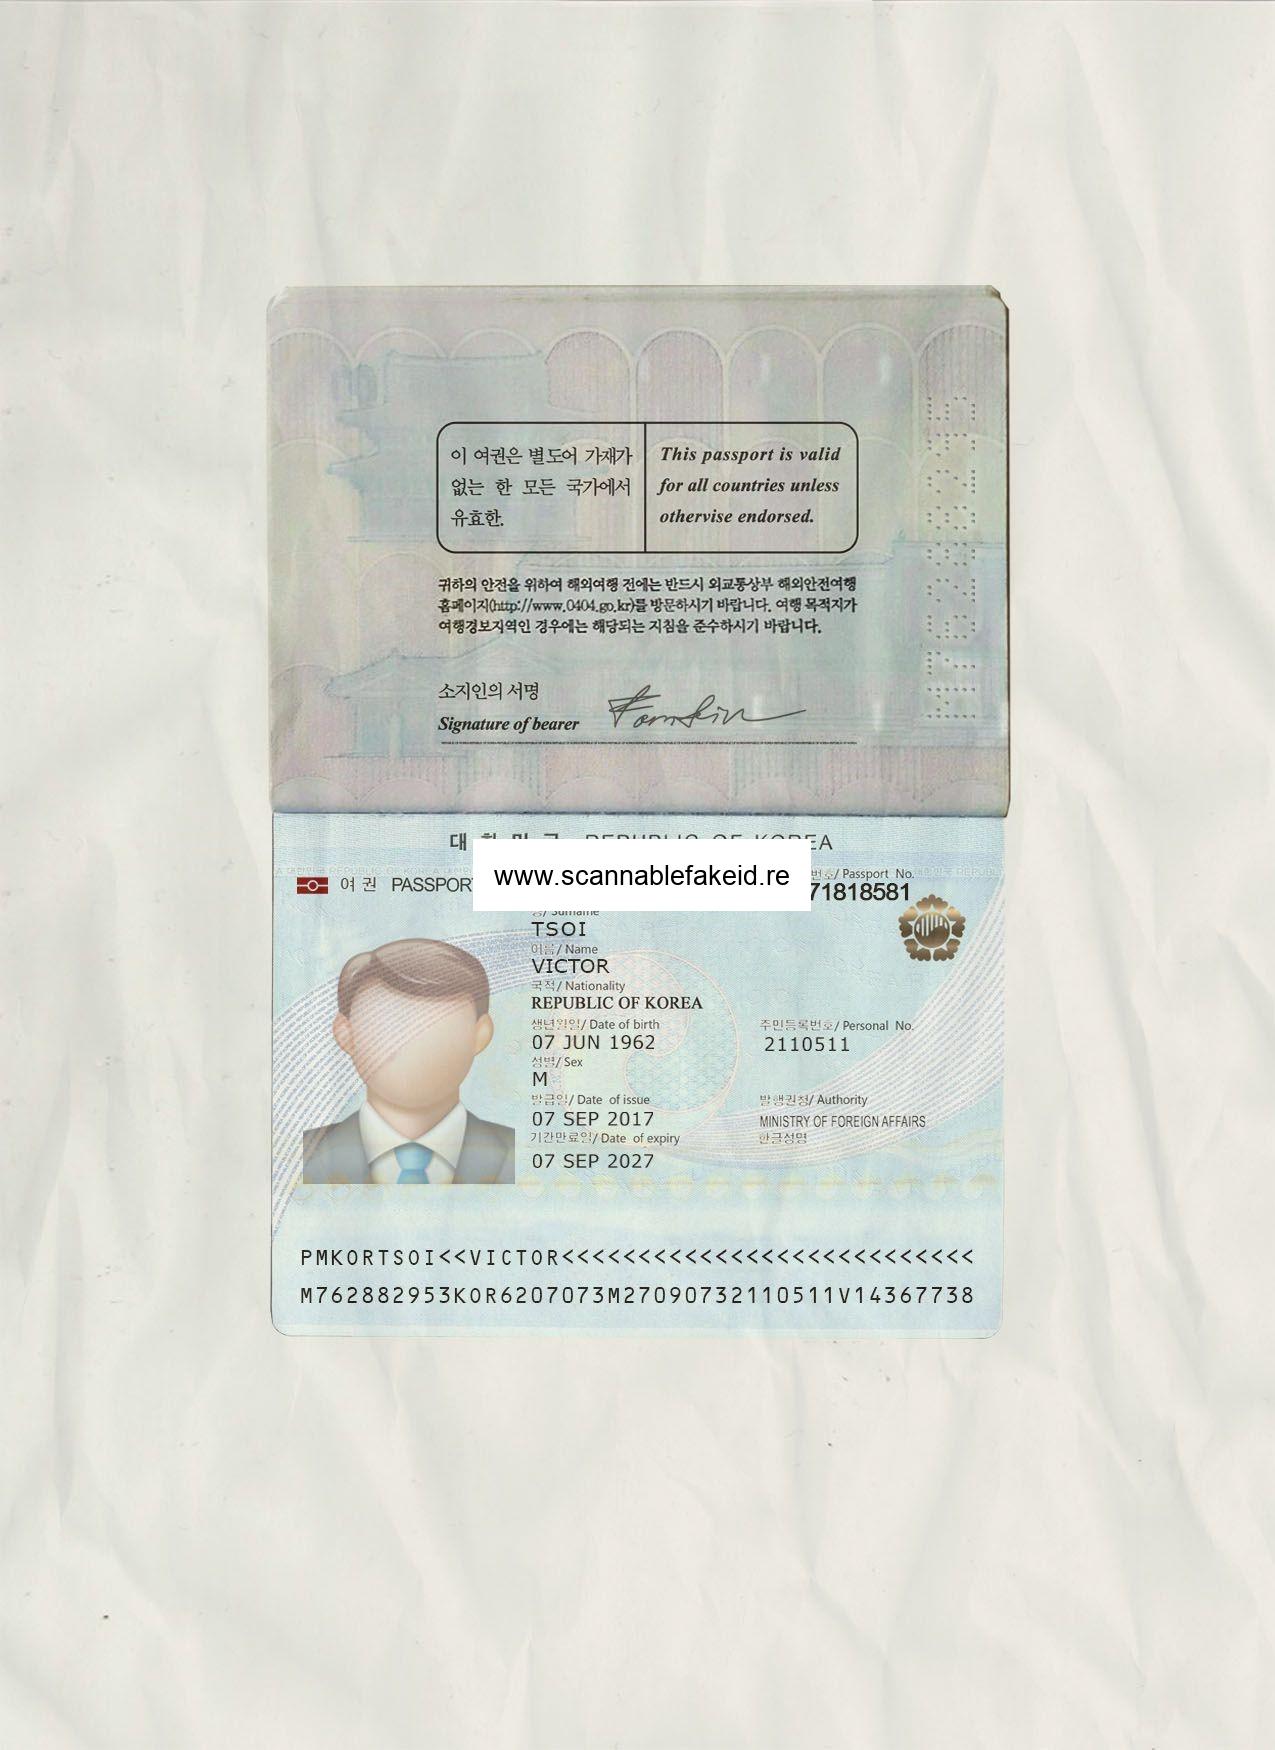 passport inside template